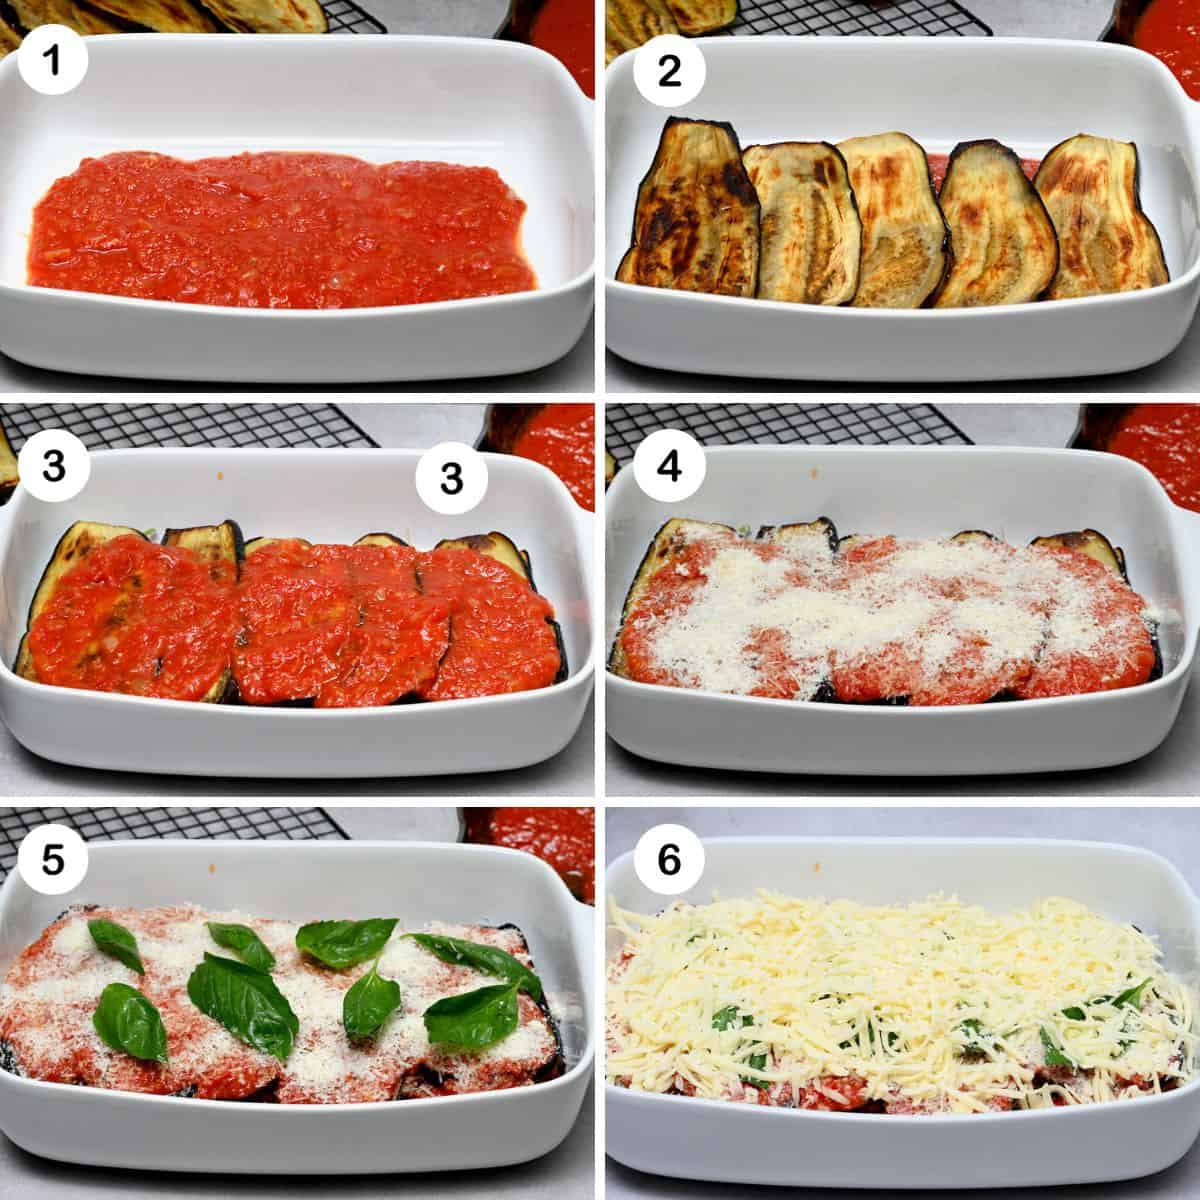 Steps for assembling eggplant parmesan